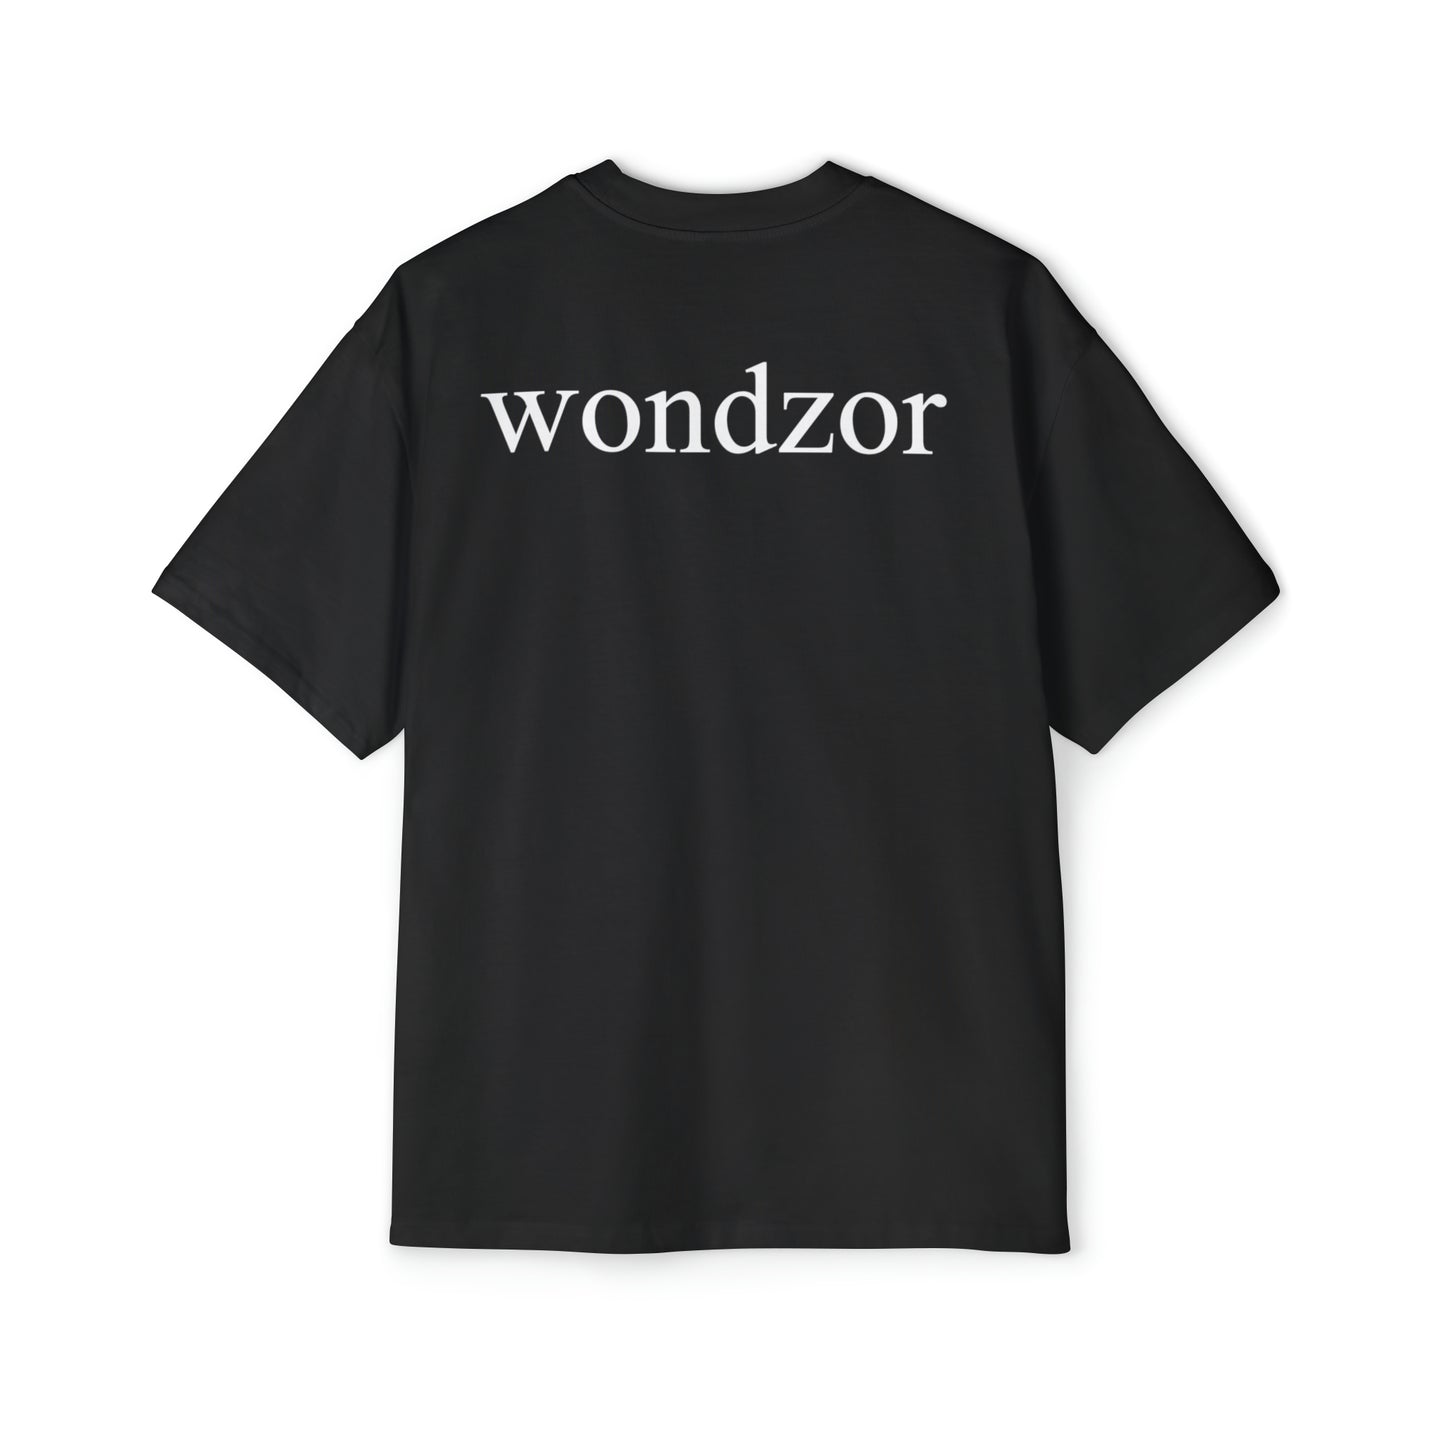 Basic Z of Wondzor